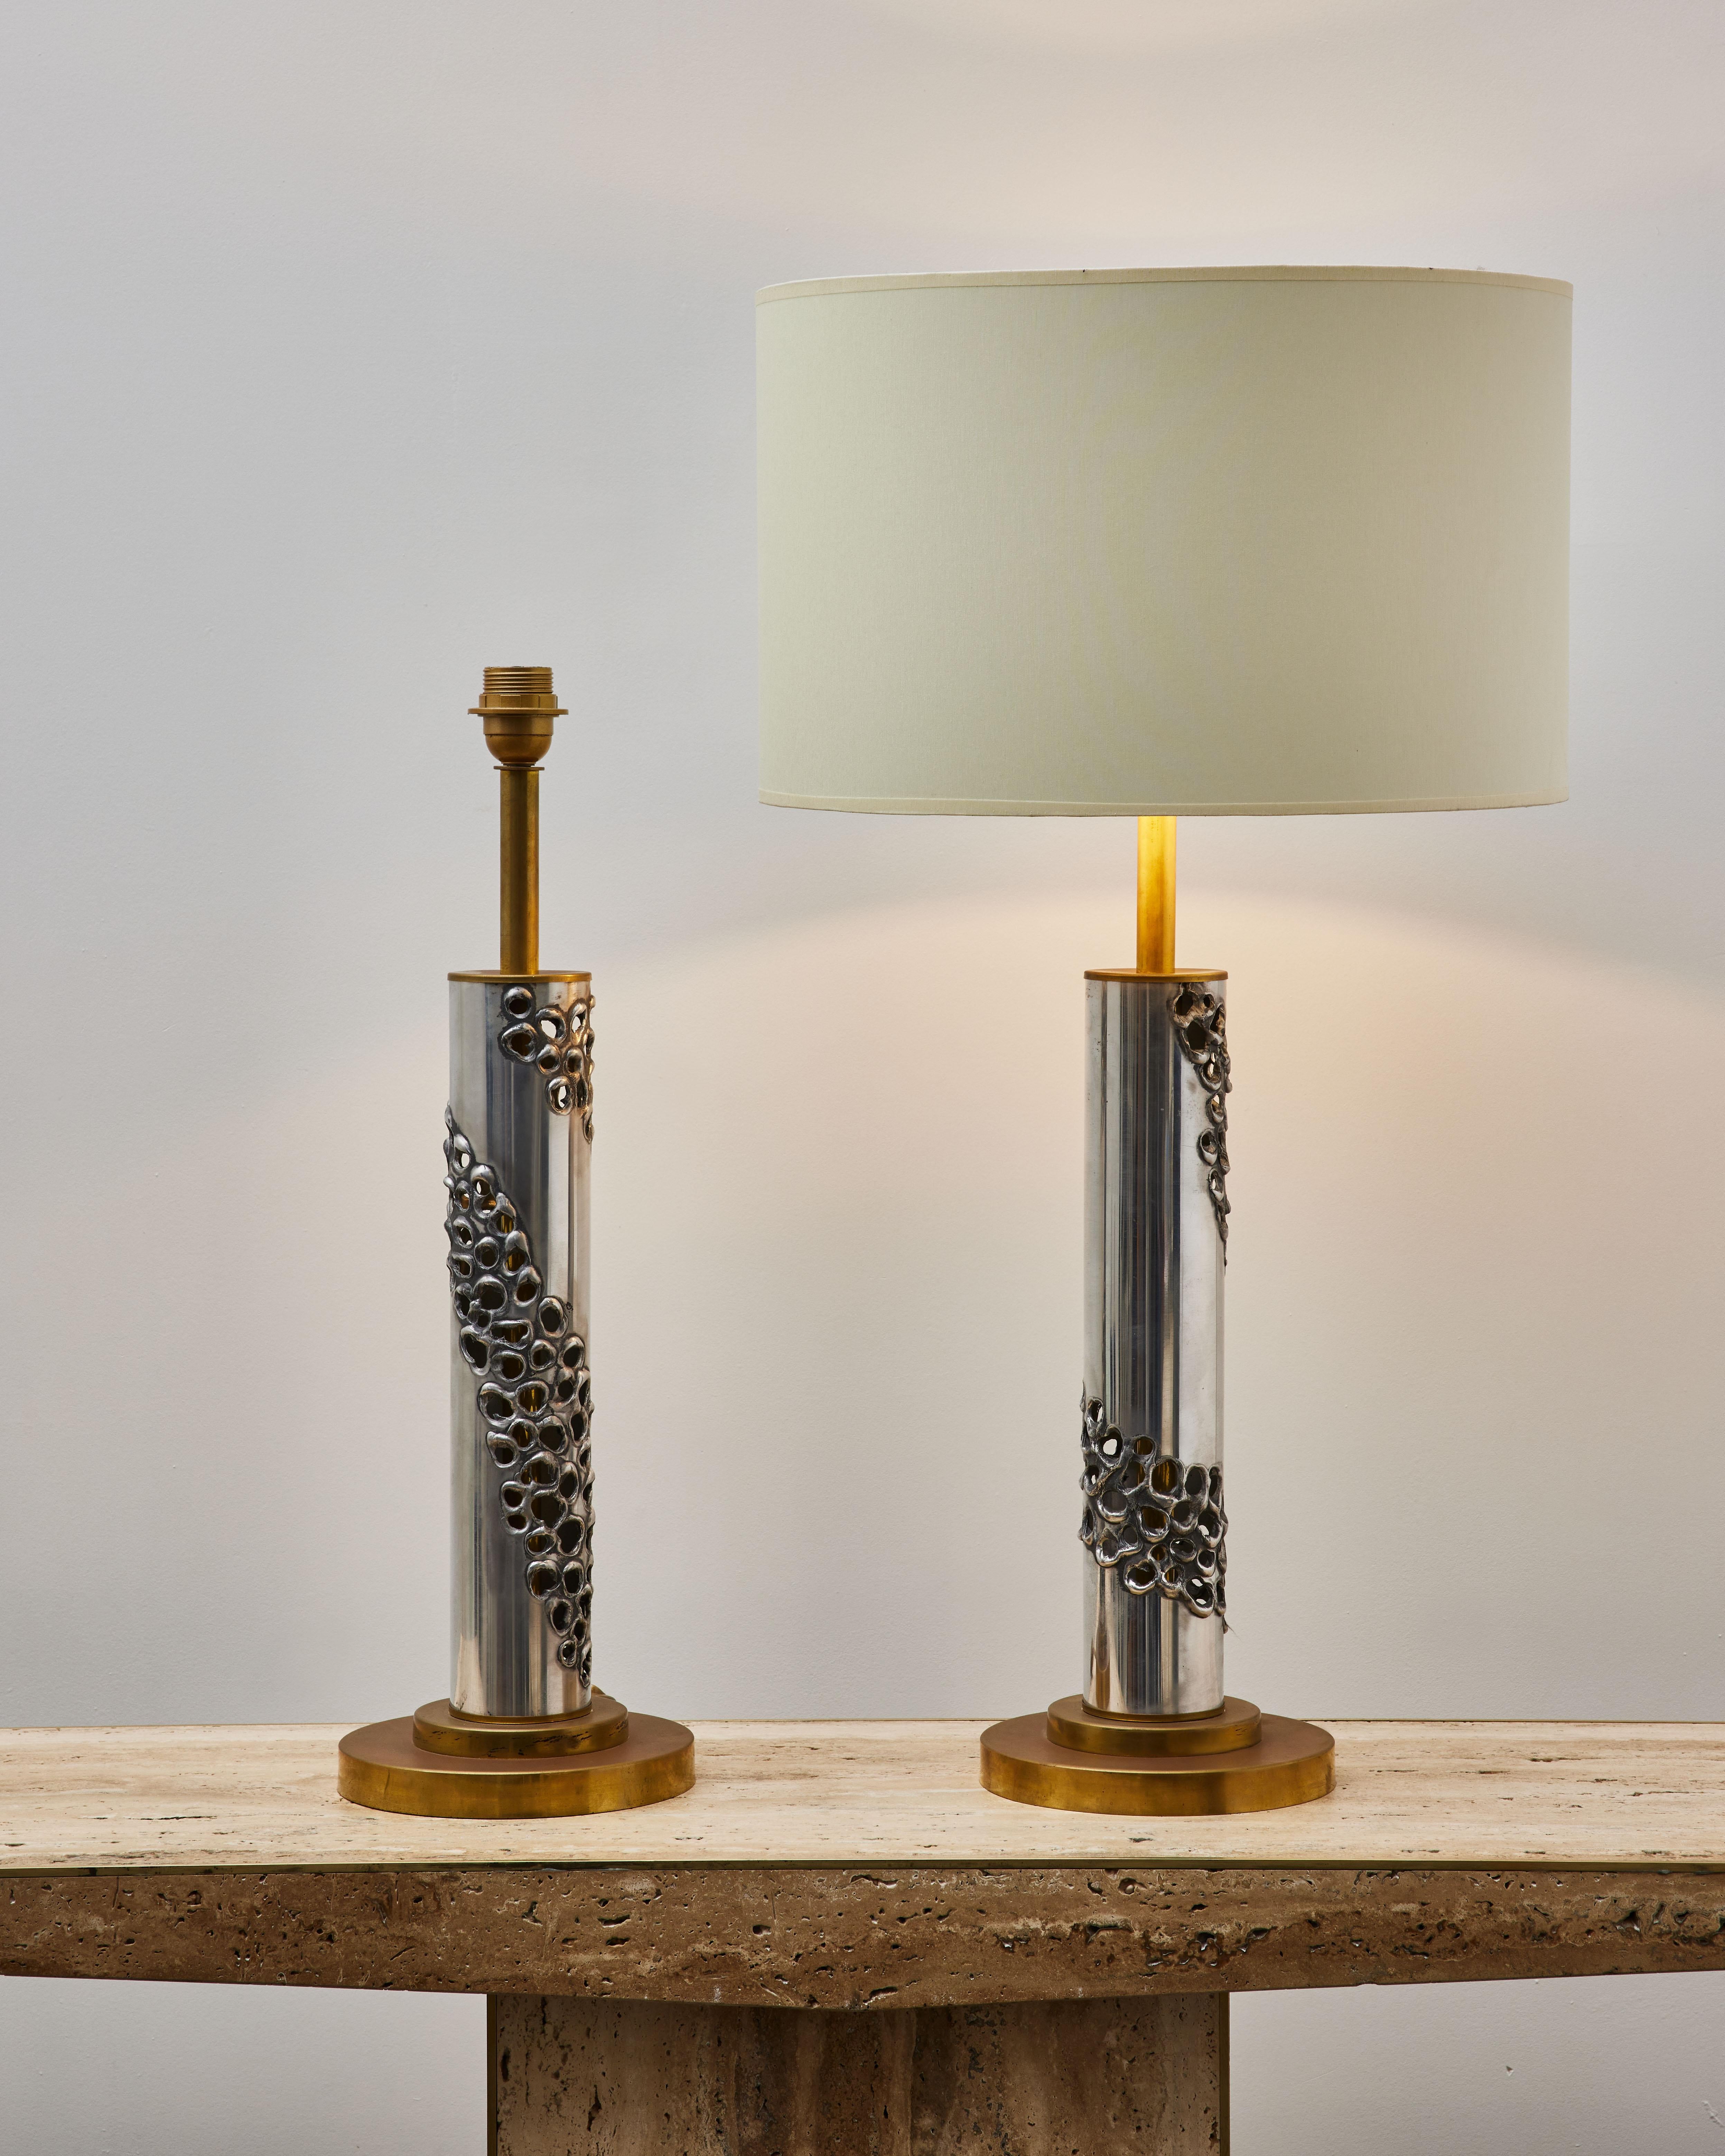 Superbe paire de lampes de table vintage en acier et laiton sculpté.
Rewired par le Studio Glustin.
Italie, années 1980

(Dimensions et prix sans abat-jour)